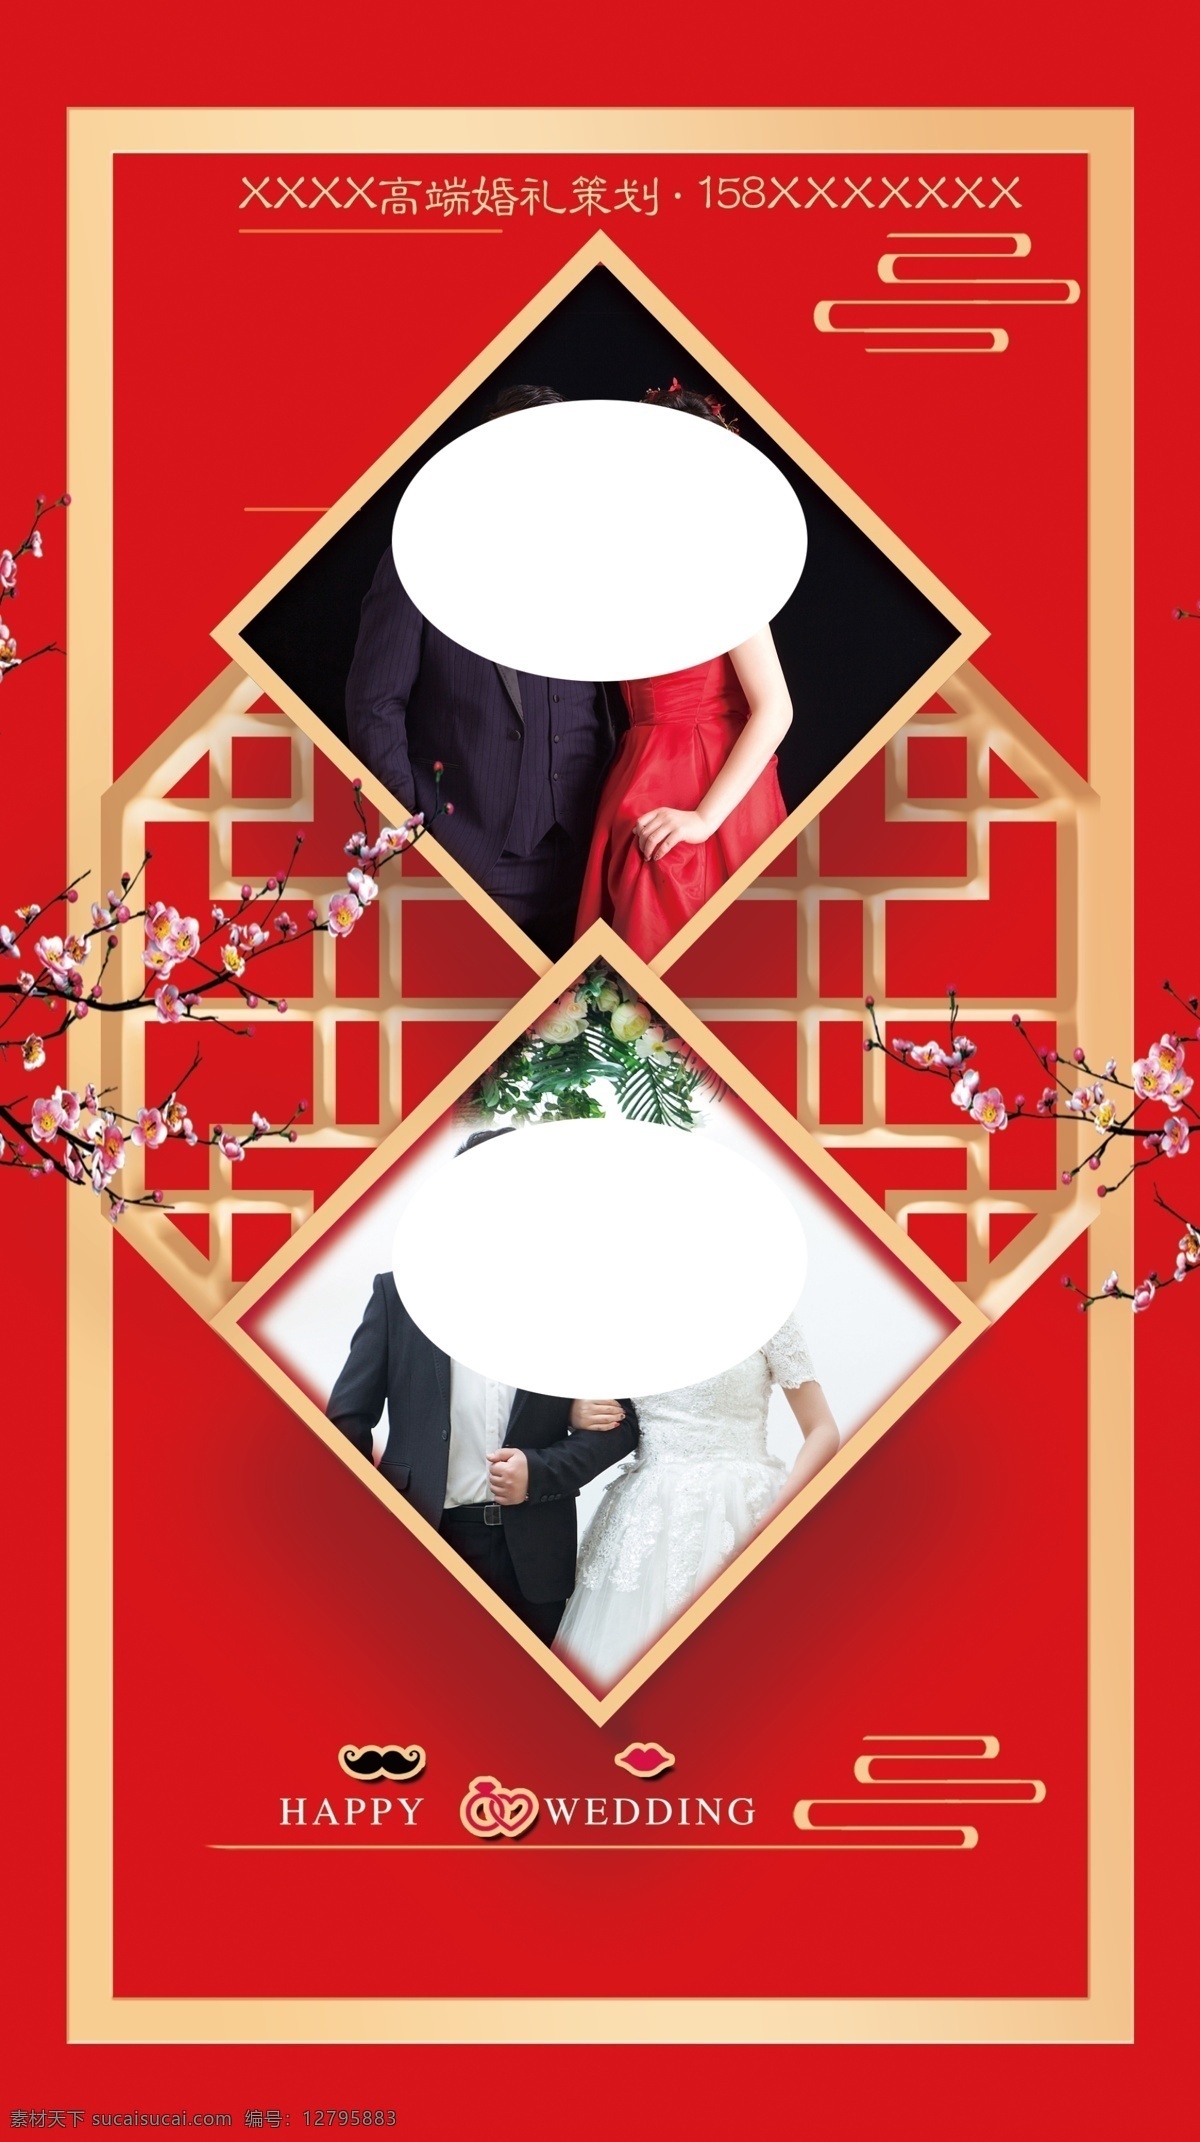 中式背景图片 中式背景 婚礼 红色背景 梅花 古典边框 照片背景 中式婚庆 婚礼幕布 婚礼素材 分层